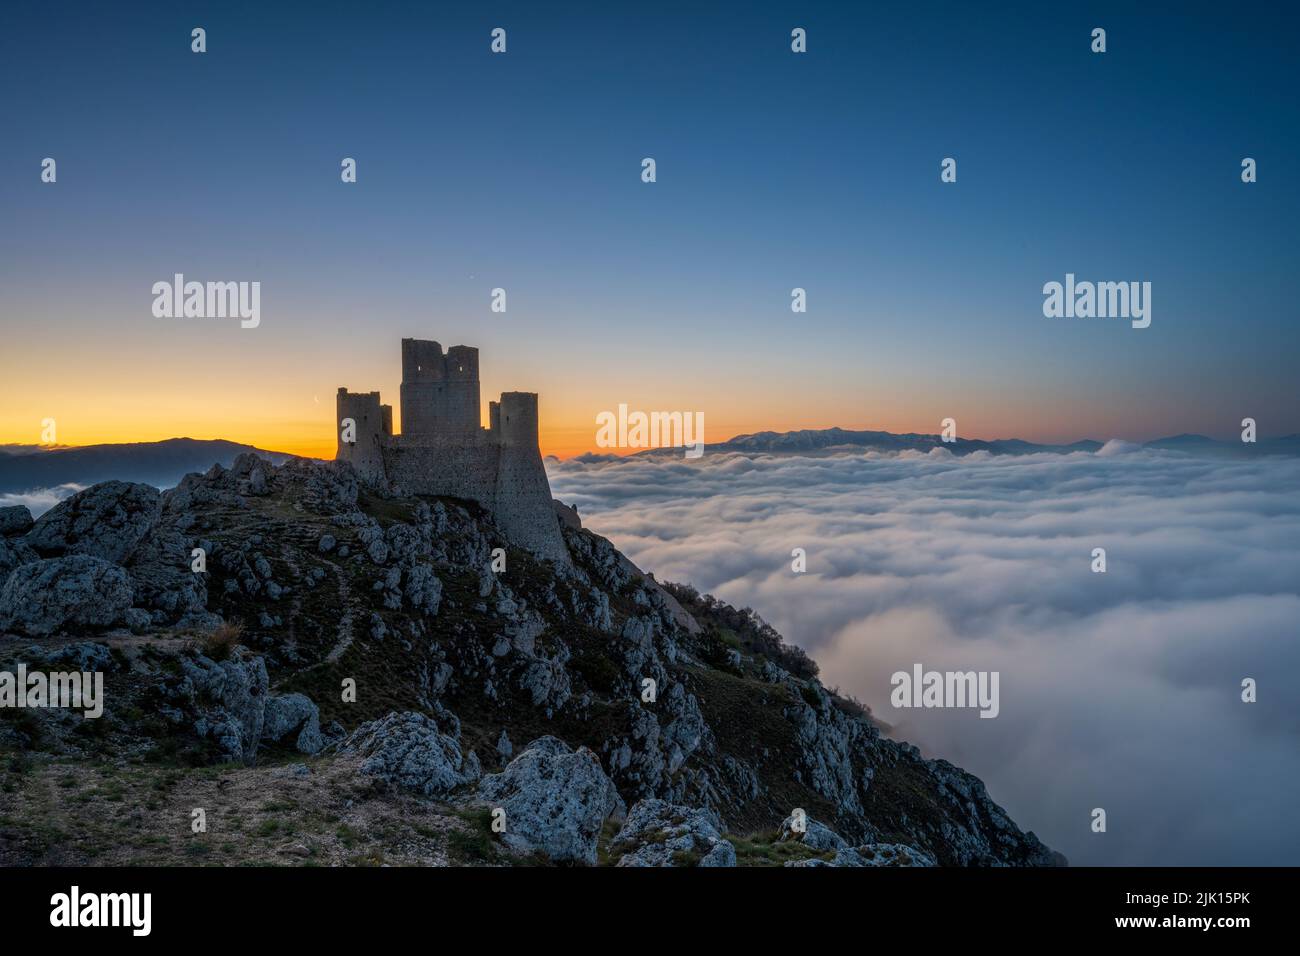 Rocca Calascio at sunrise with cloud inversion, Calascio, L'Aquila, Abruzzo, Italy, Europe Stock Photo